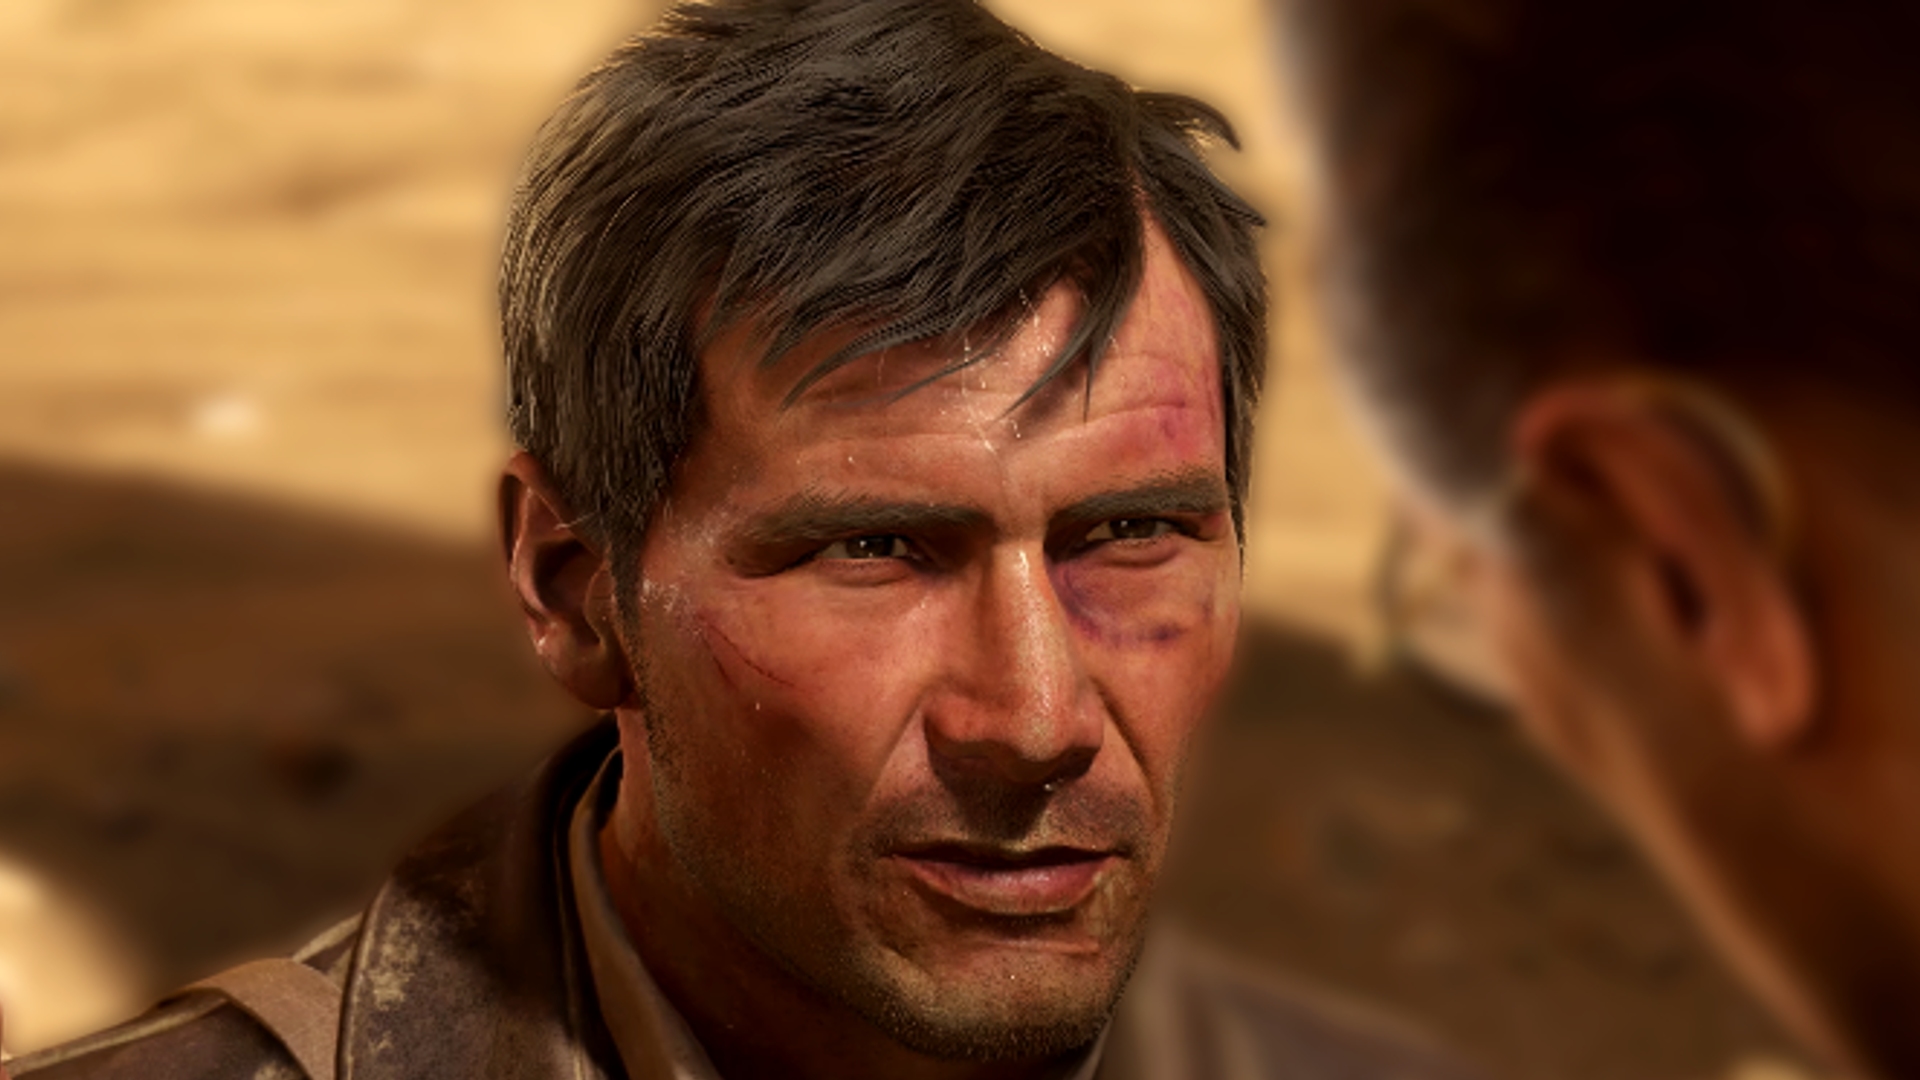 Bethesda's Wolfenstein developer reveals new Indiana Jones game